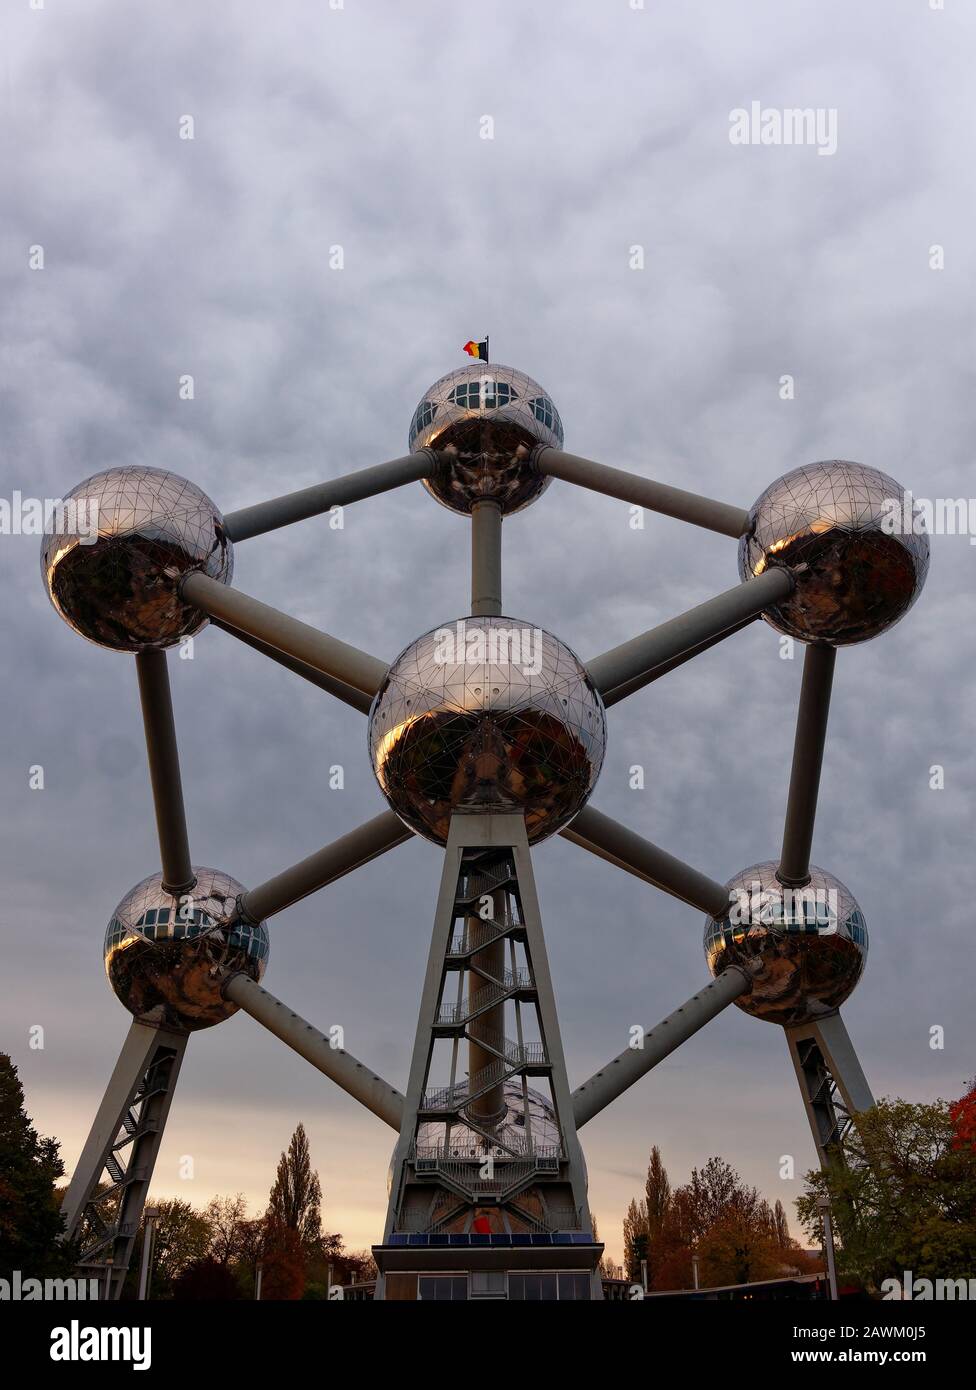 Brüssel, Belgien - November 2019: Atomium Eisen Atom Modell in Brüssel Belgien Panorama Stockfoto